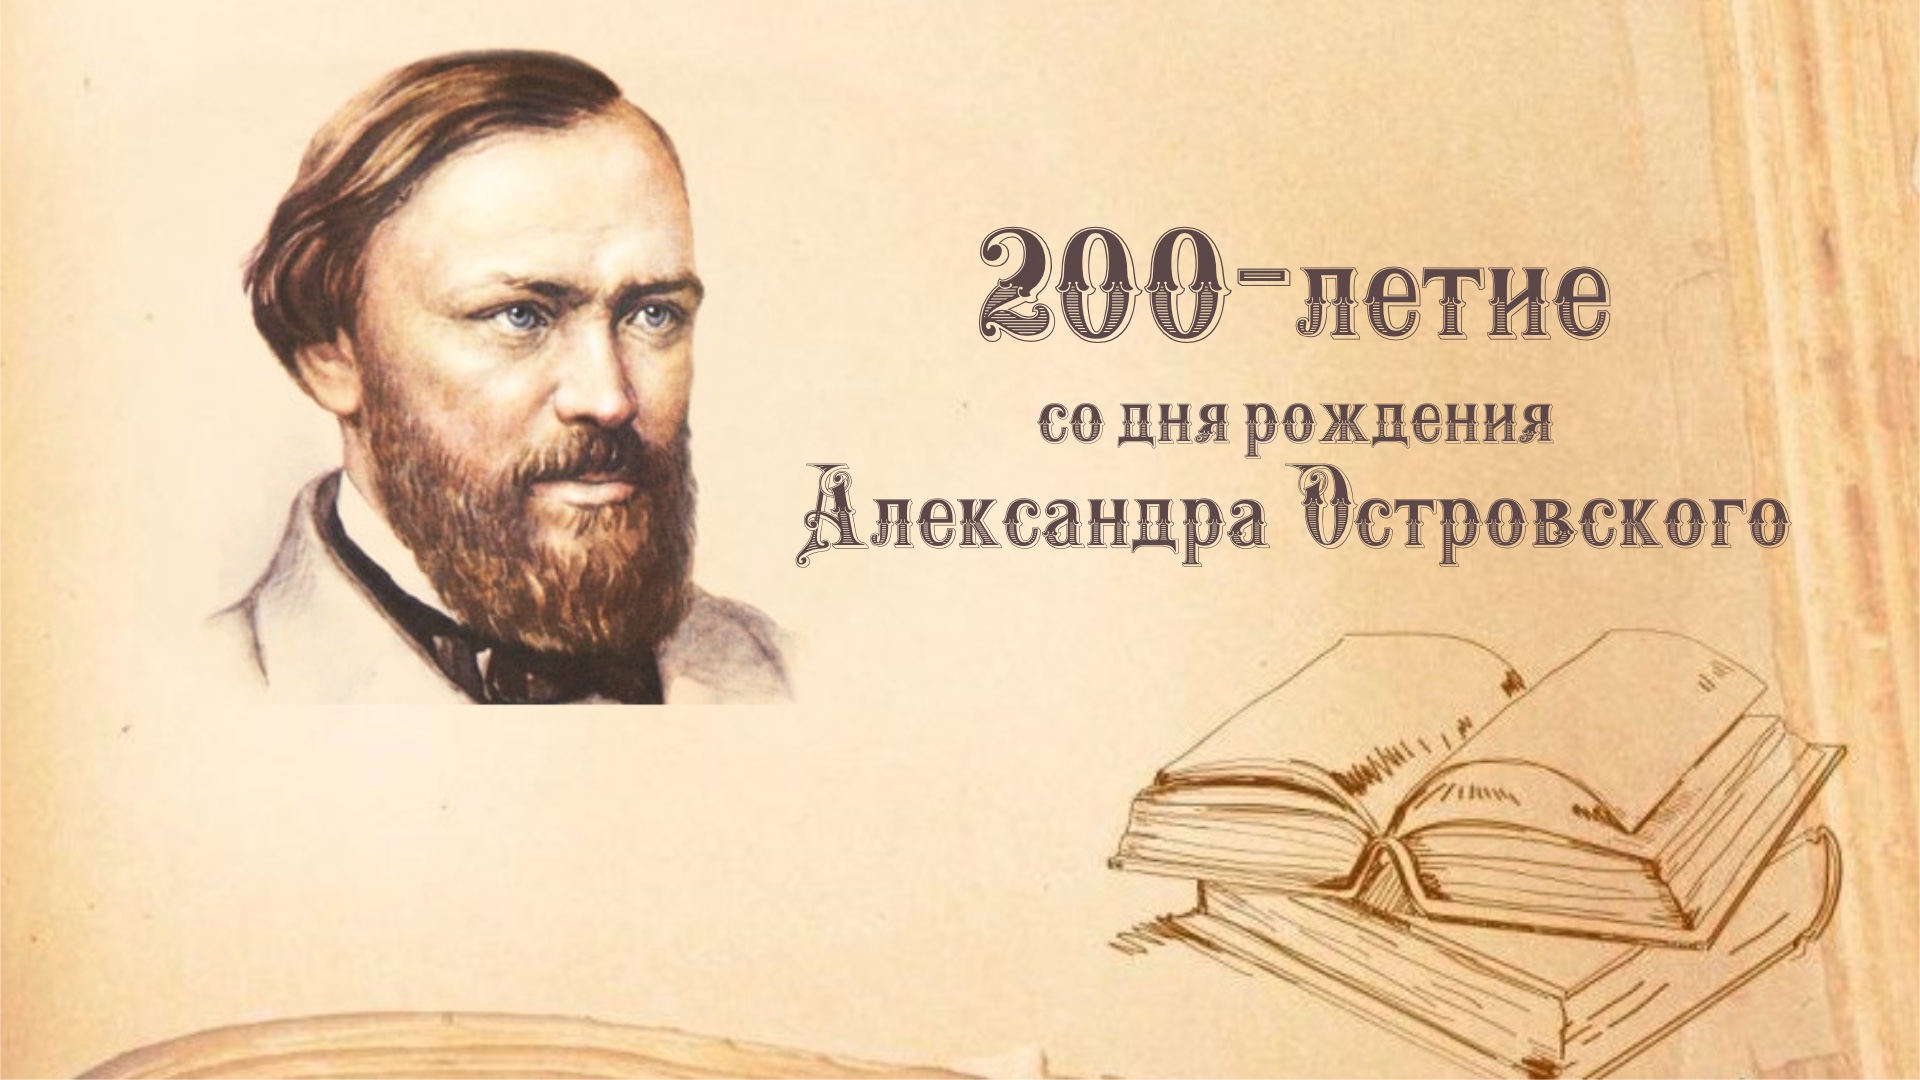 #про45#200 лет со дня рождения А.Н.Островского#образование45.